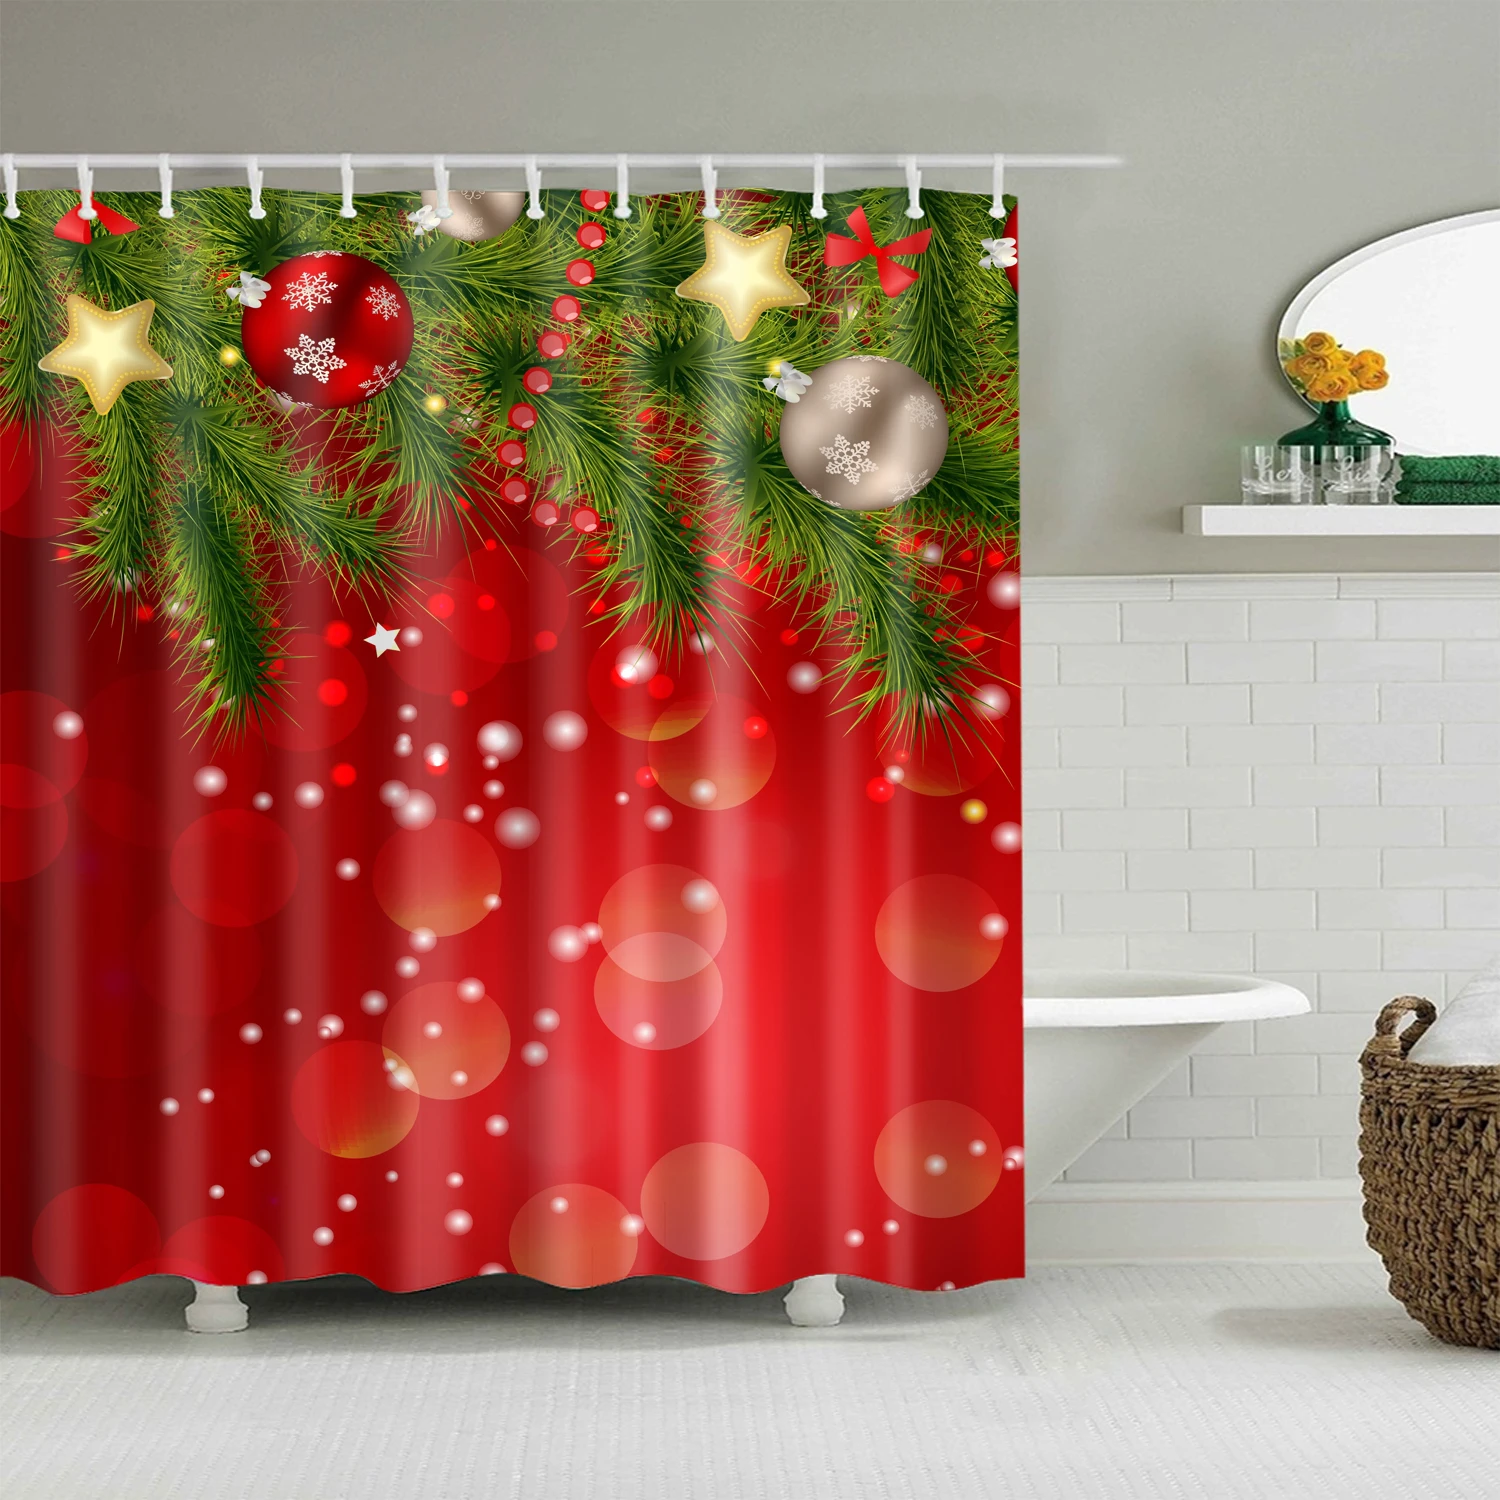 Badeværelse Badeforhæng Santa Claus, Sne Mand, Trykt Bad Gardin Glædelig Jul Living Room Home Decor Badeværelse Gardin 2